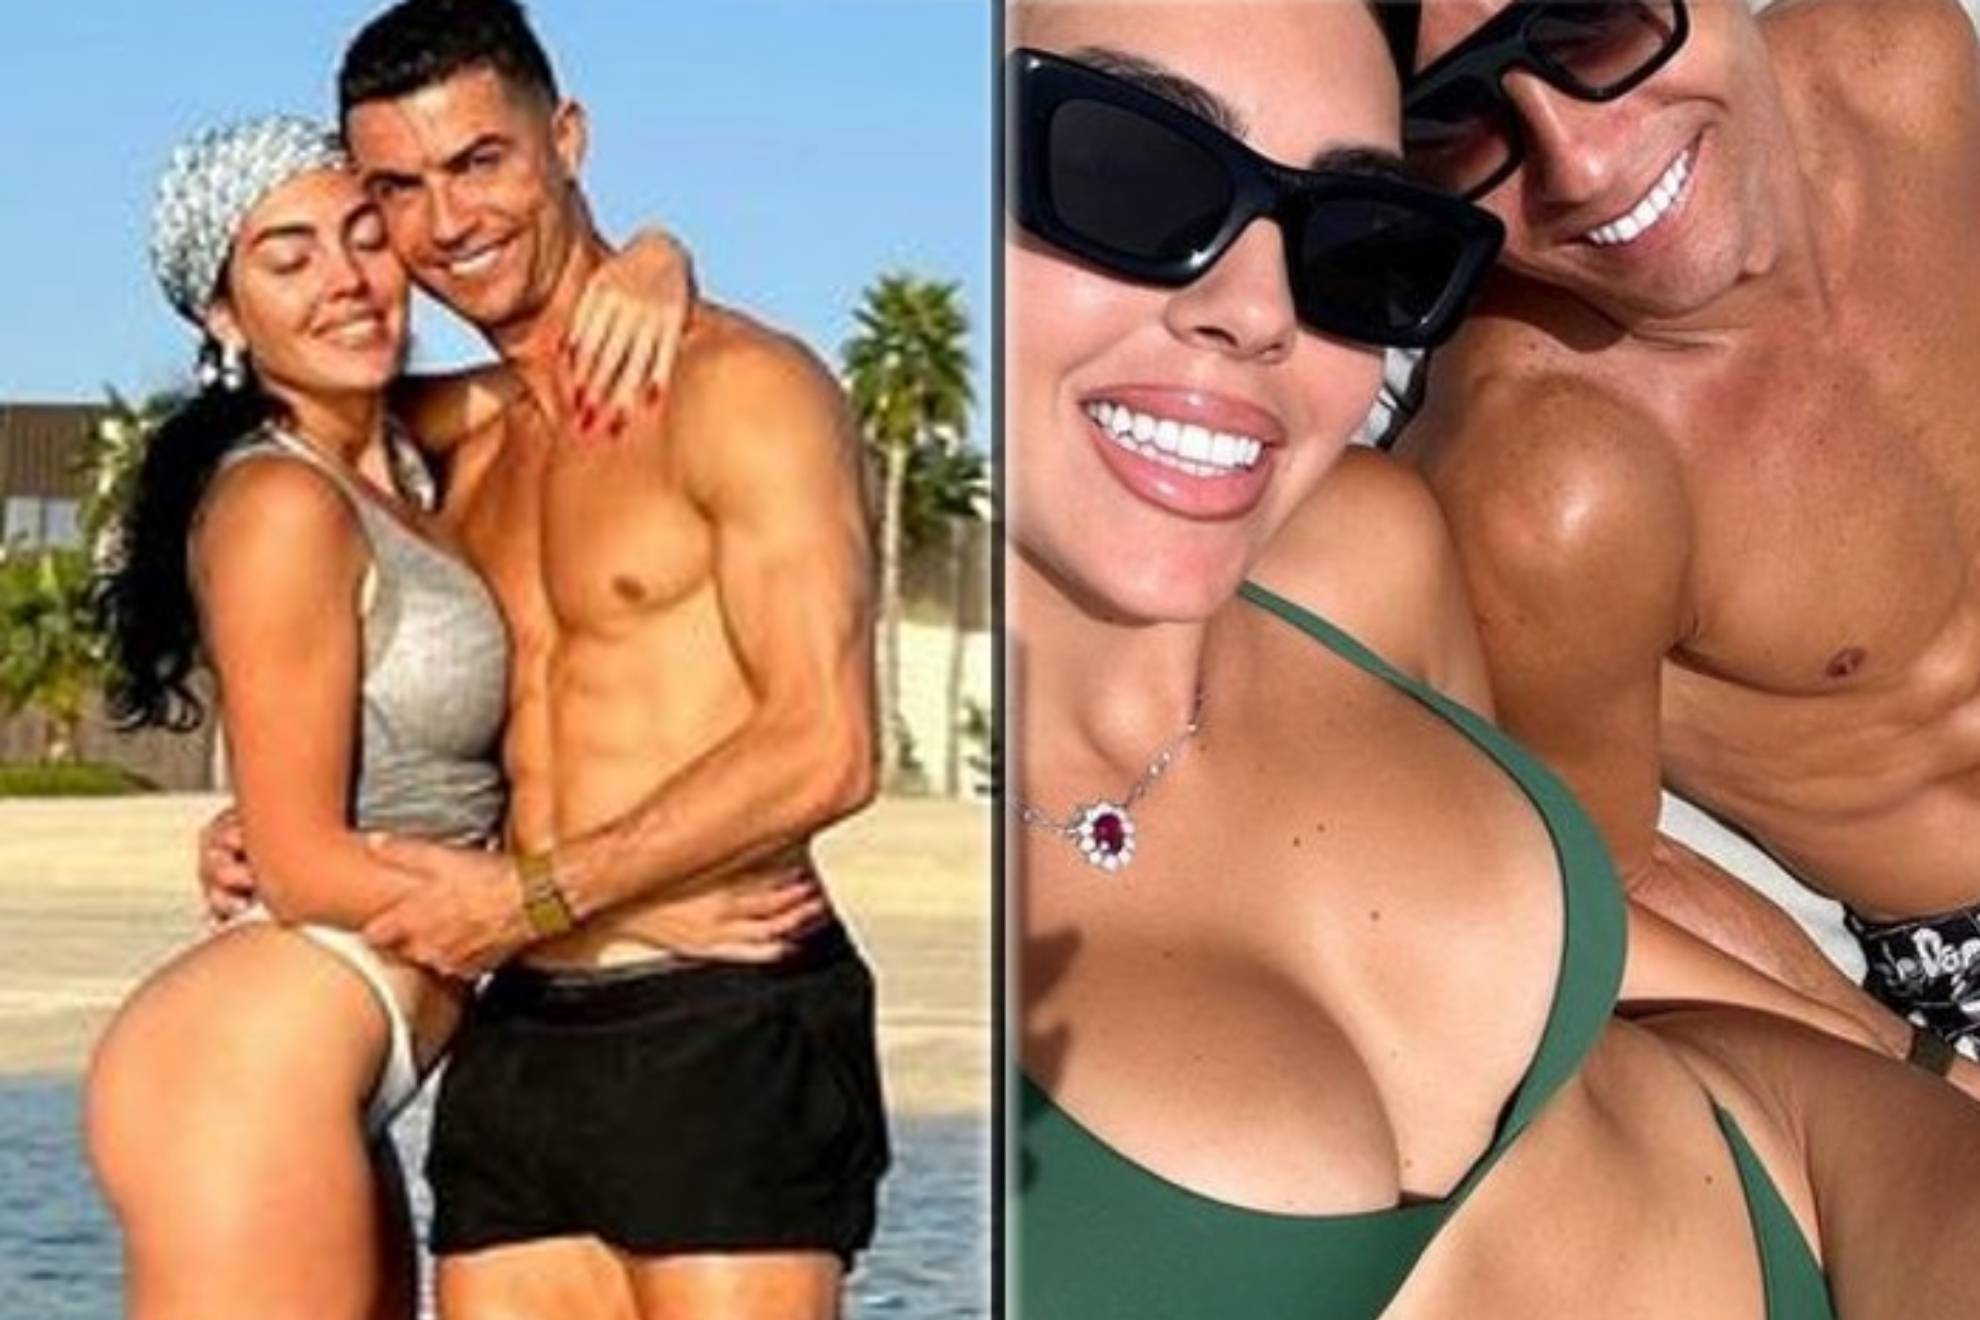 Cristiano Ronaldo (617 millones de seguidores) y Georgina Rodr�guez 55,6 millones de segudiores) compartieron una declaraci�n de amor en sus respectivas cuentas de Instagram. Almas gemelas, escribi� el futbolista portugu�s de 38 a�os que juega en el  Al-Nassr F. C. publicando una foto en ba�ador junto a Georgina.